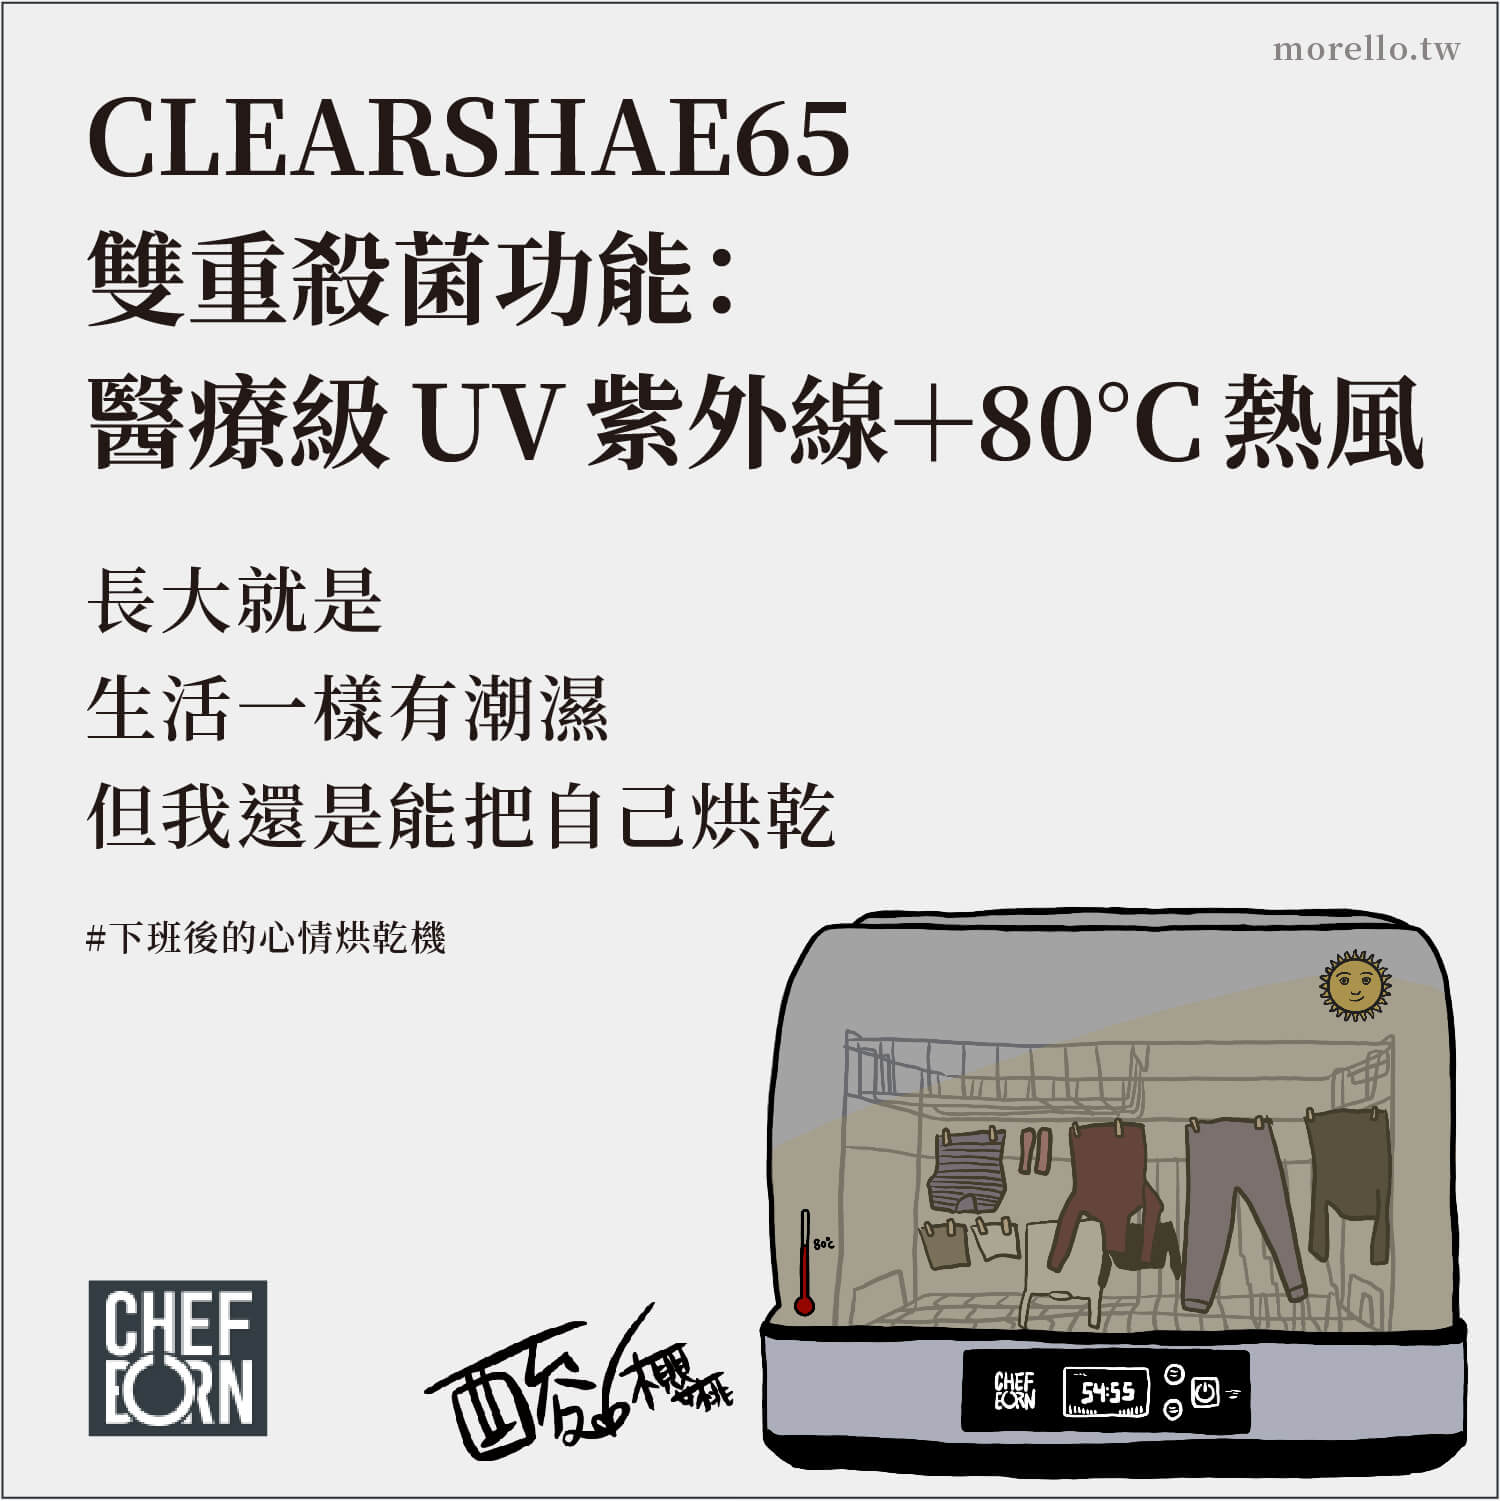 一般橫式美型 烘碗機 （內建式除外）較少有 UV 消毒，【CHEFBORN】CLEARSHAE65 是市售少數橫式機型提供雙重殺菌的 烘碗機 。